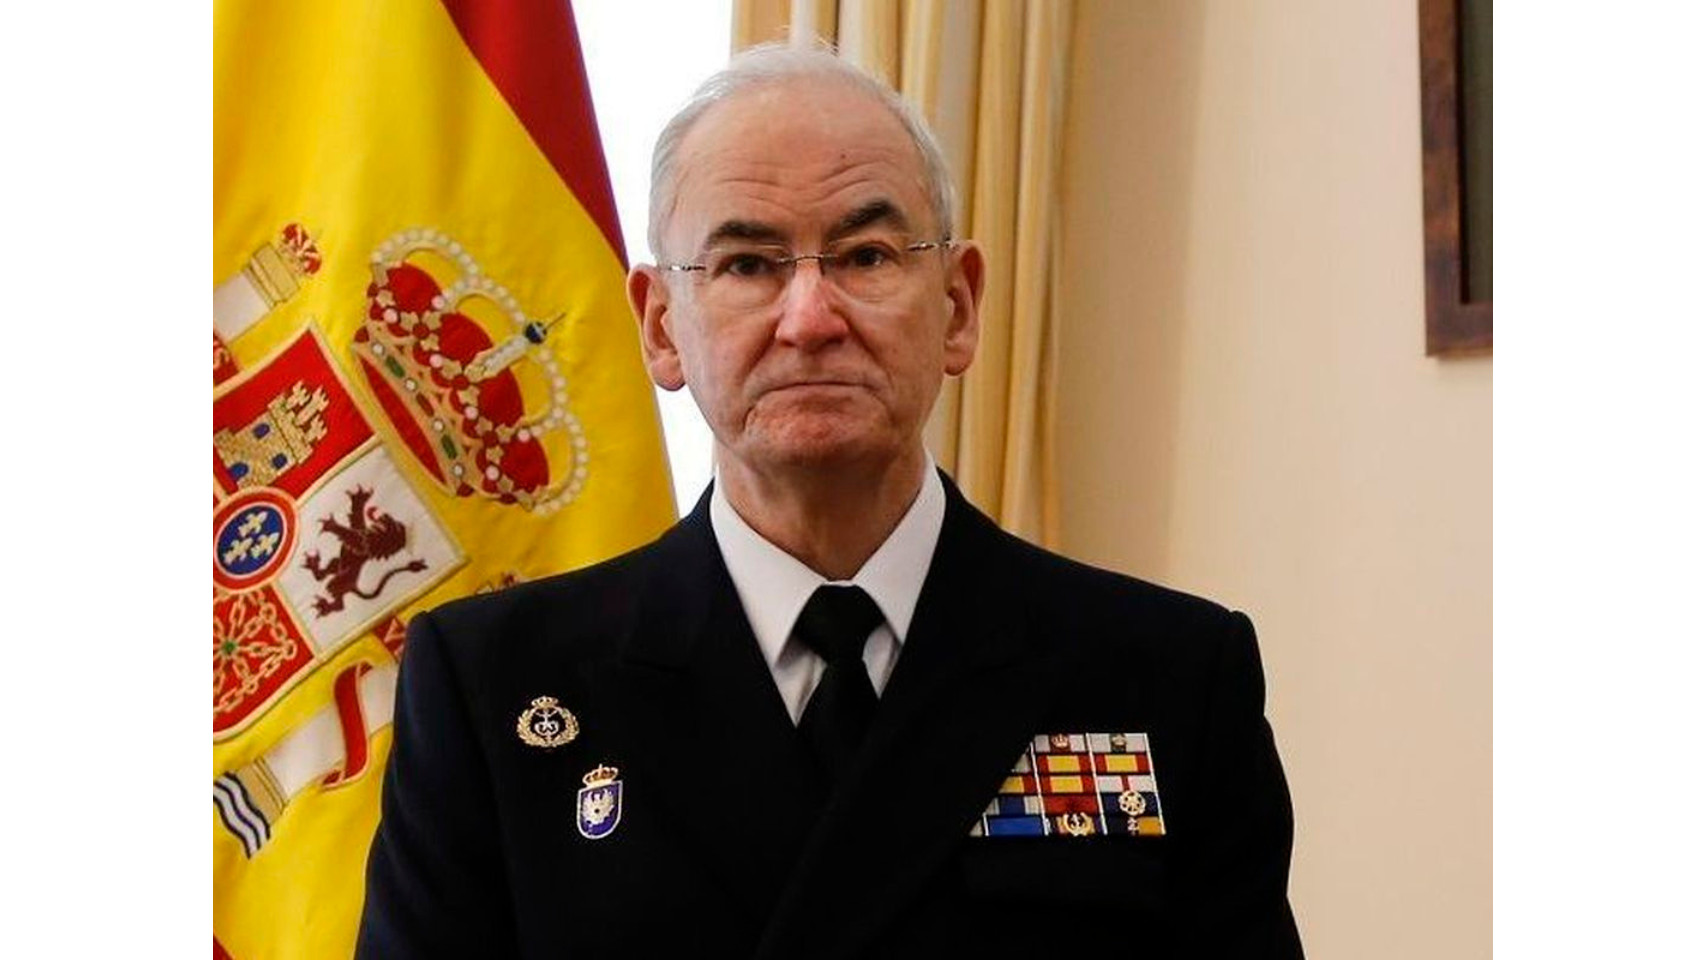 Almirante general Teodoro Esteban López Calderón